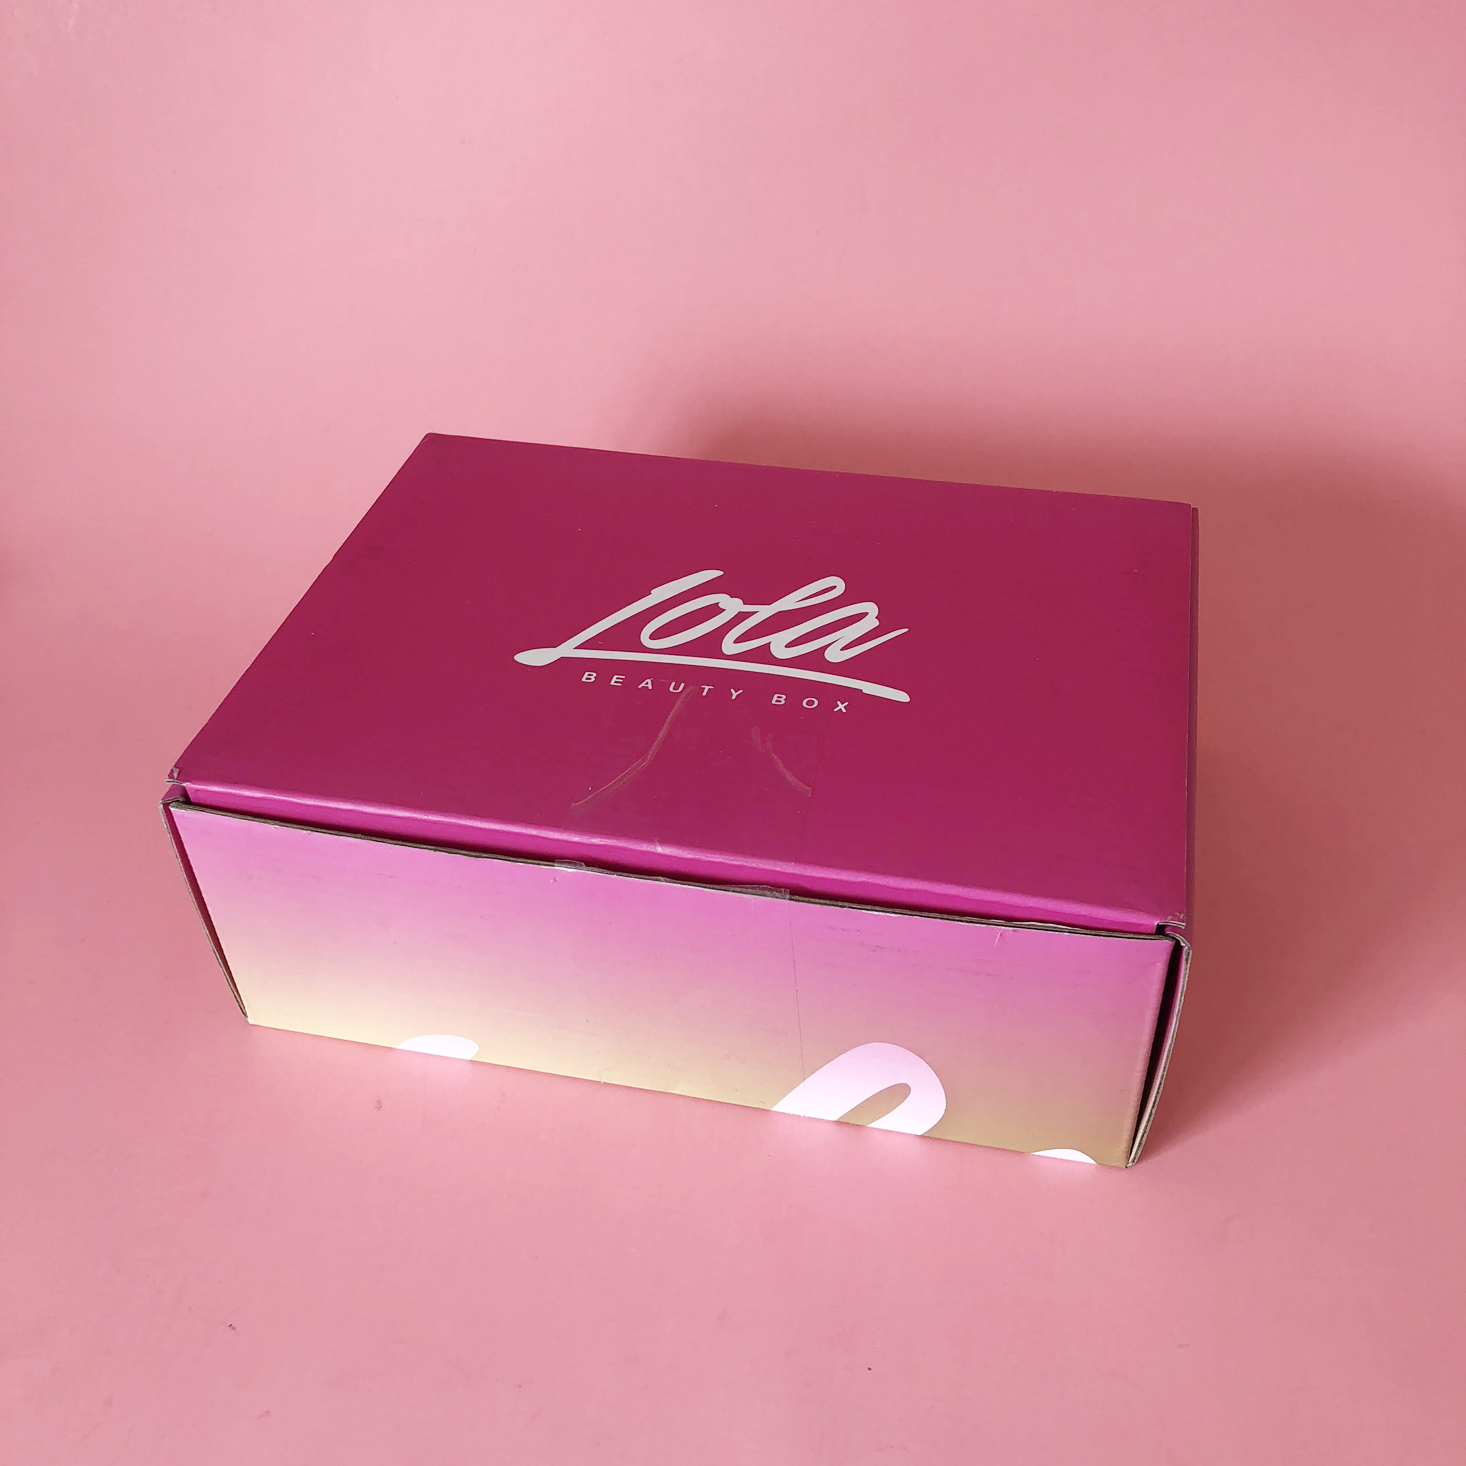 Lola Beauty Box Subscription Review – January 2018